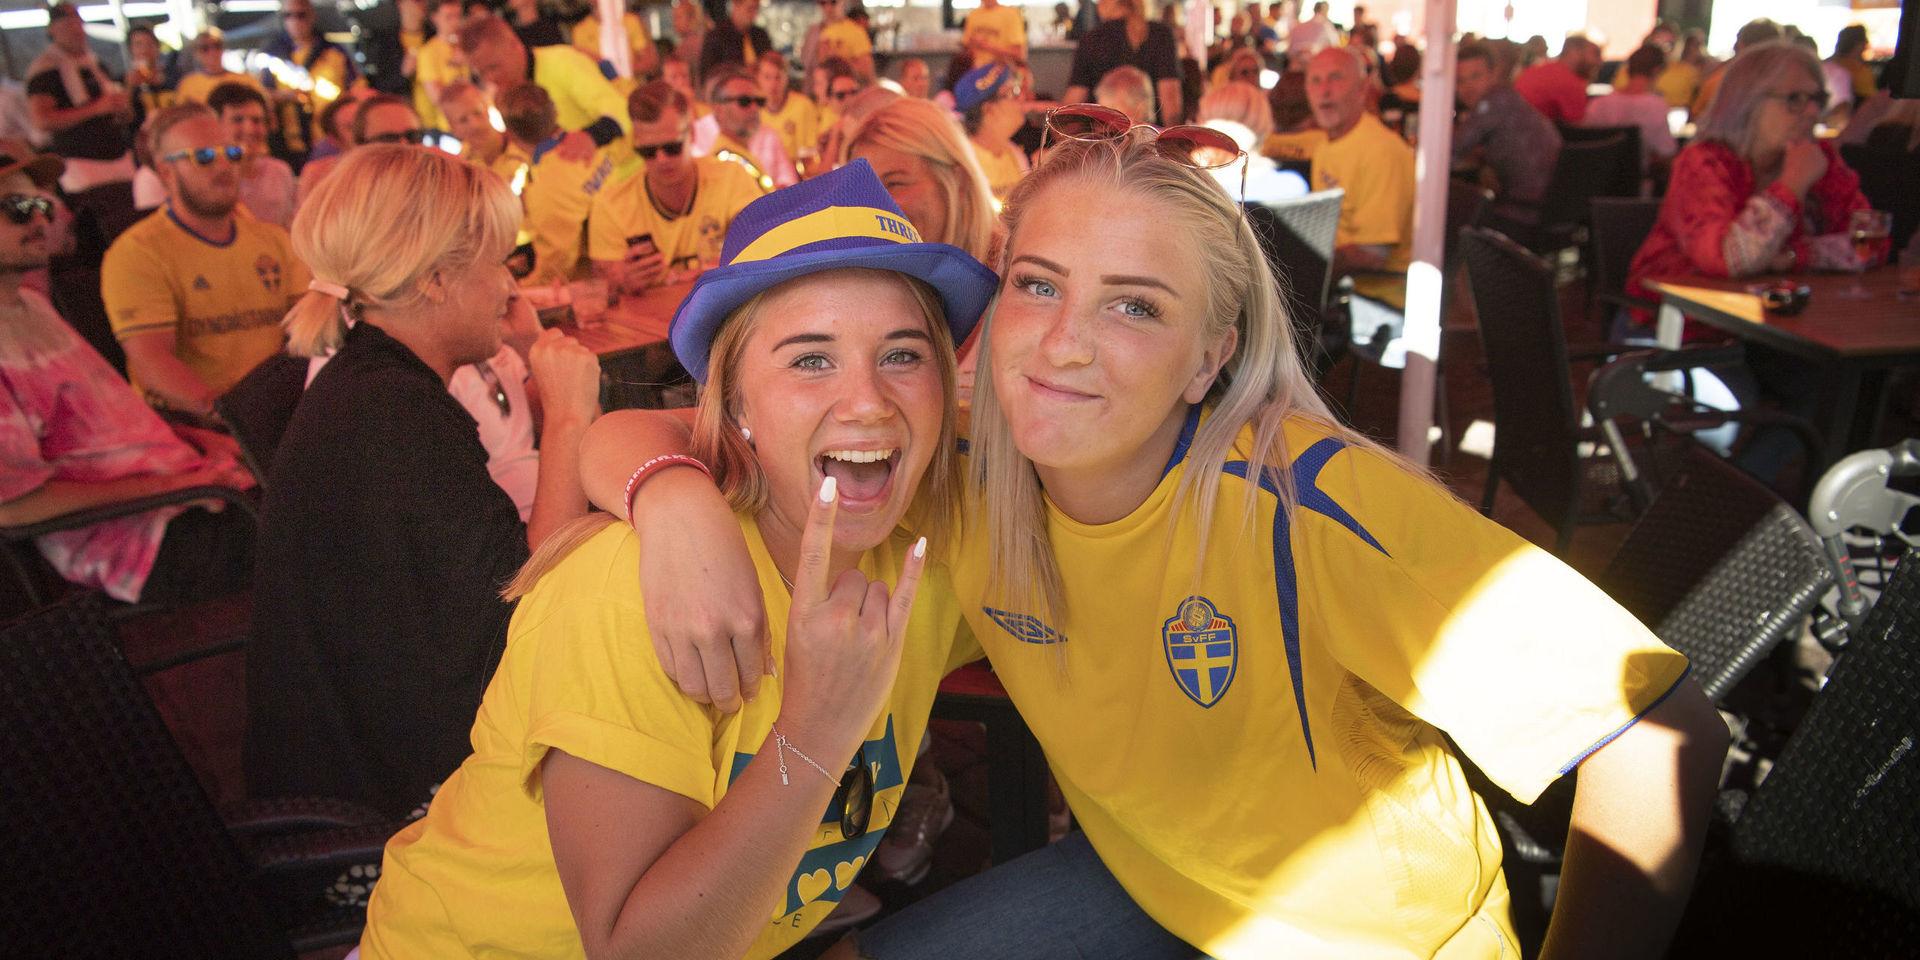 Halmstadborna Nelli Evald och Ellie Nielsen tror på vinst för Sverige i kvällens match. 